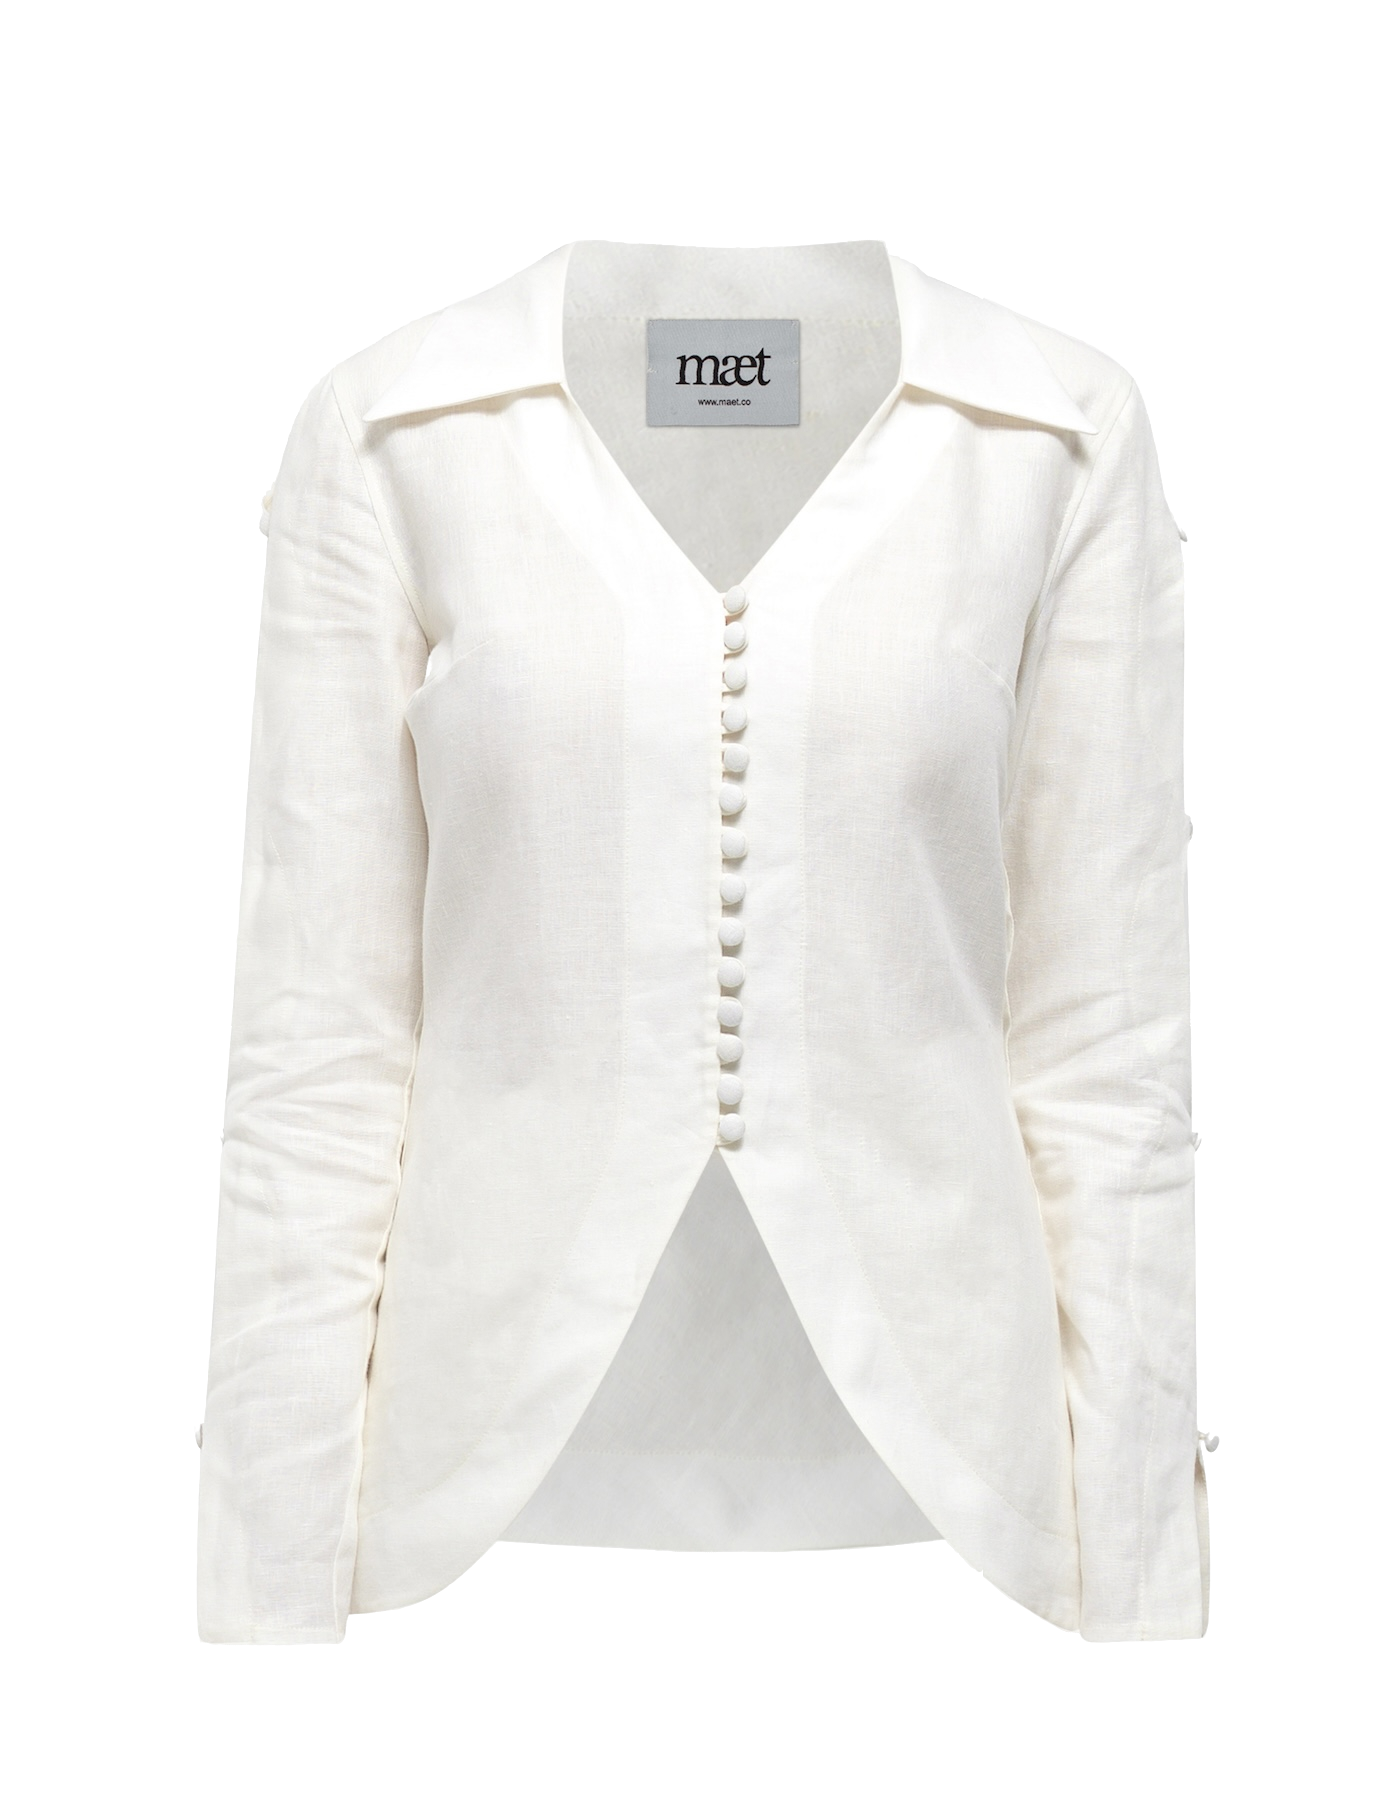 NEREUS White Linen Collared Shirt von MAET